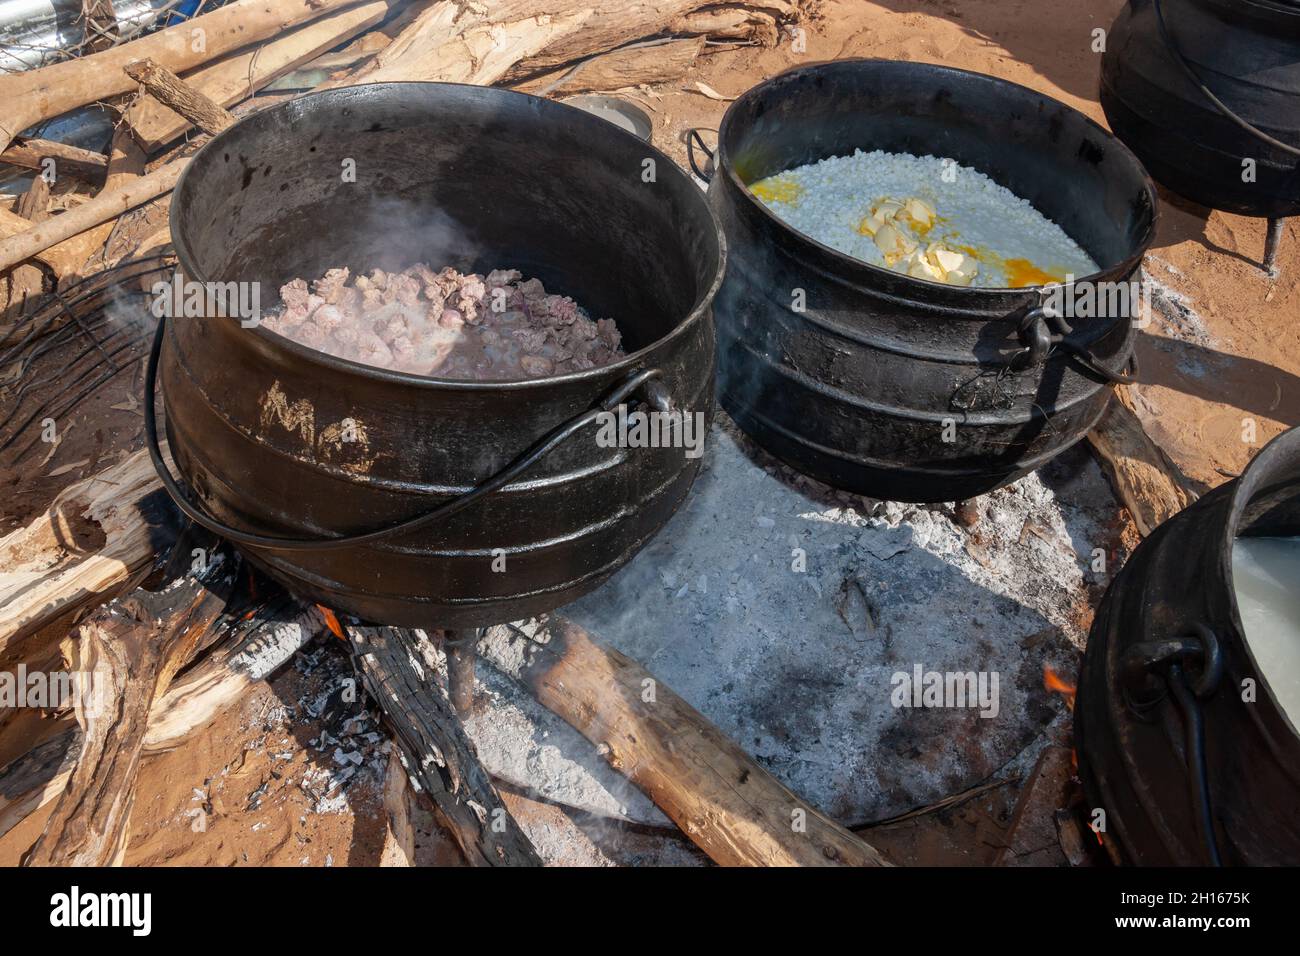 Cuisine africaine en plein air dans la cuisine avec trois pots à pattes pour les fêtes et les mariages Banque D'Images